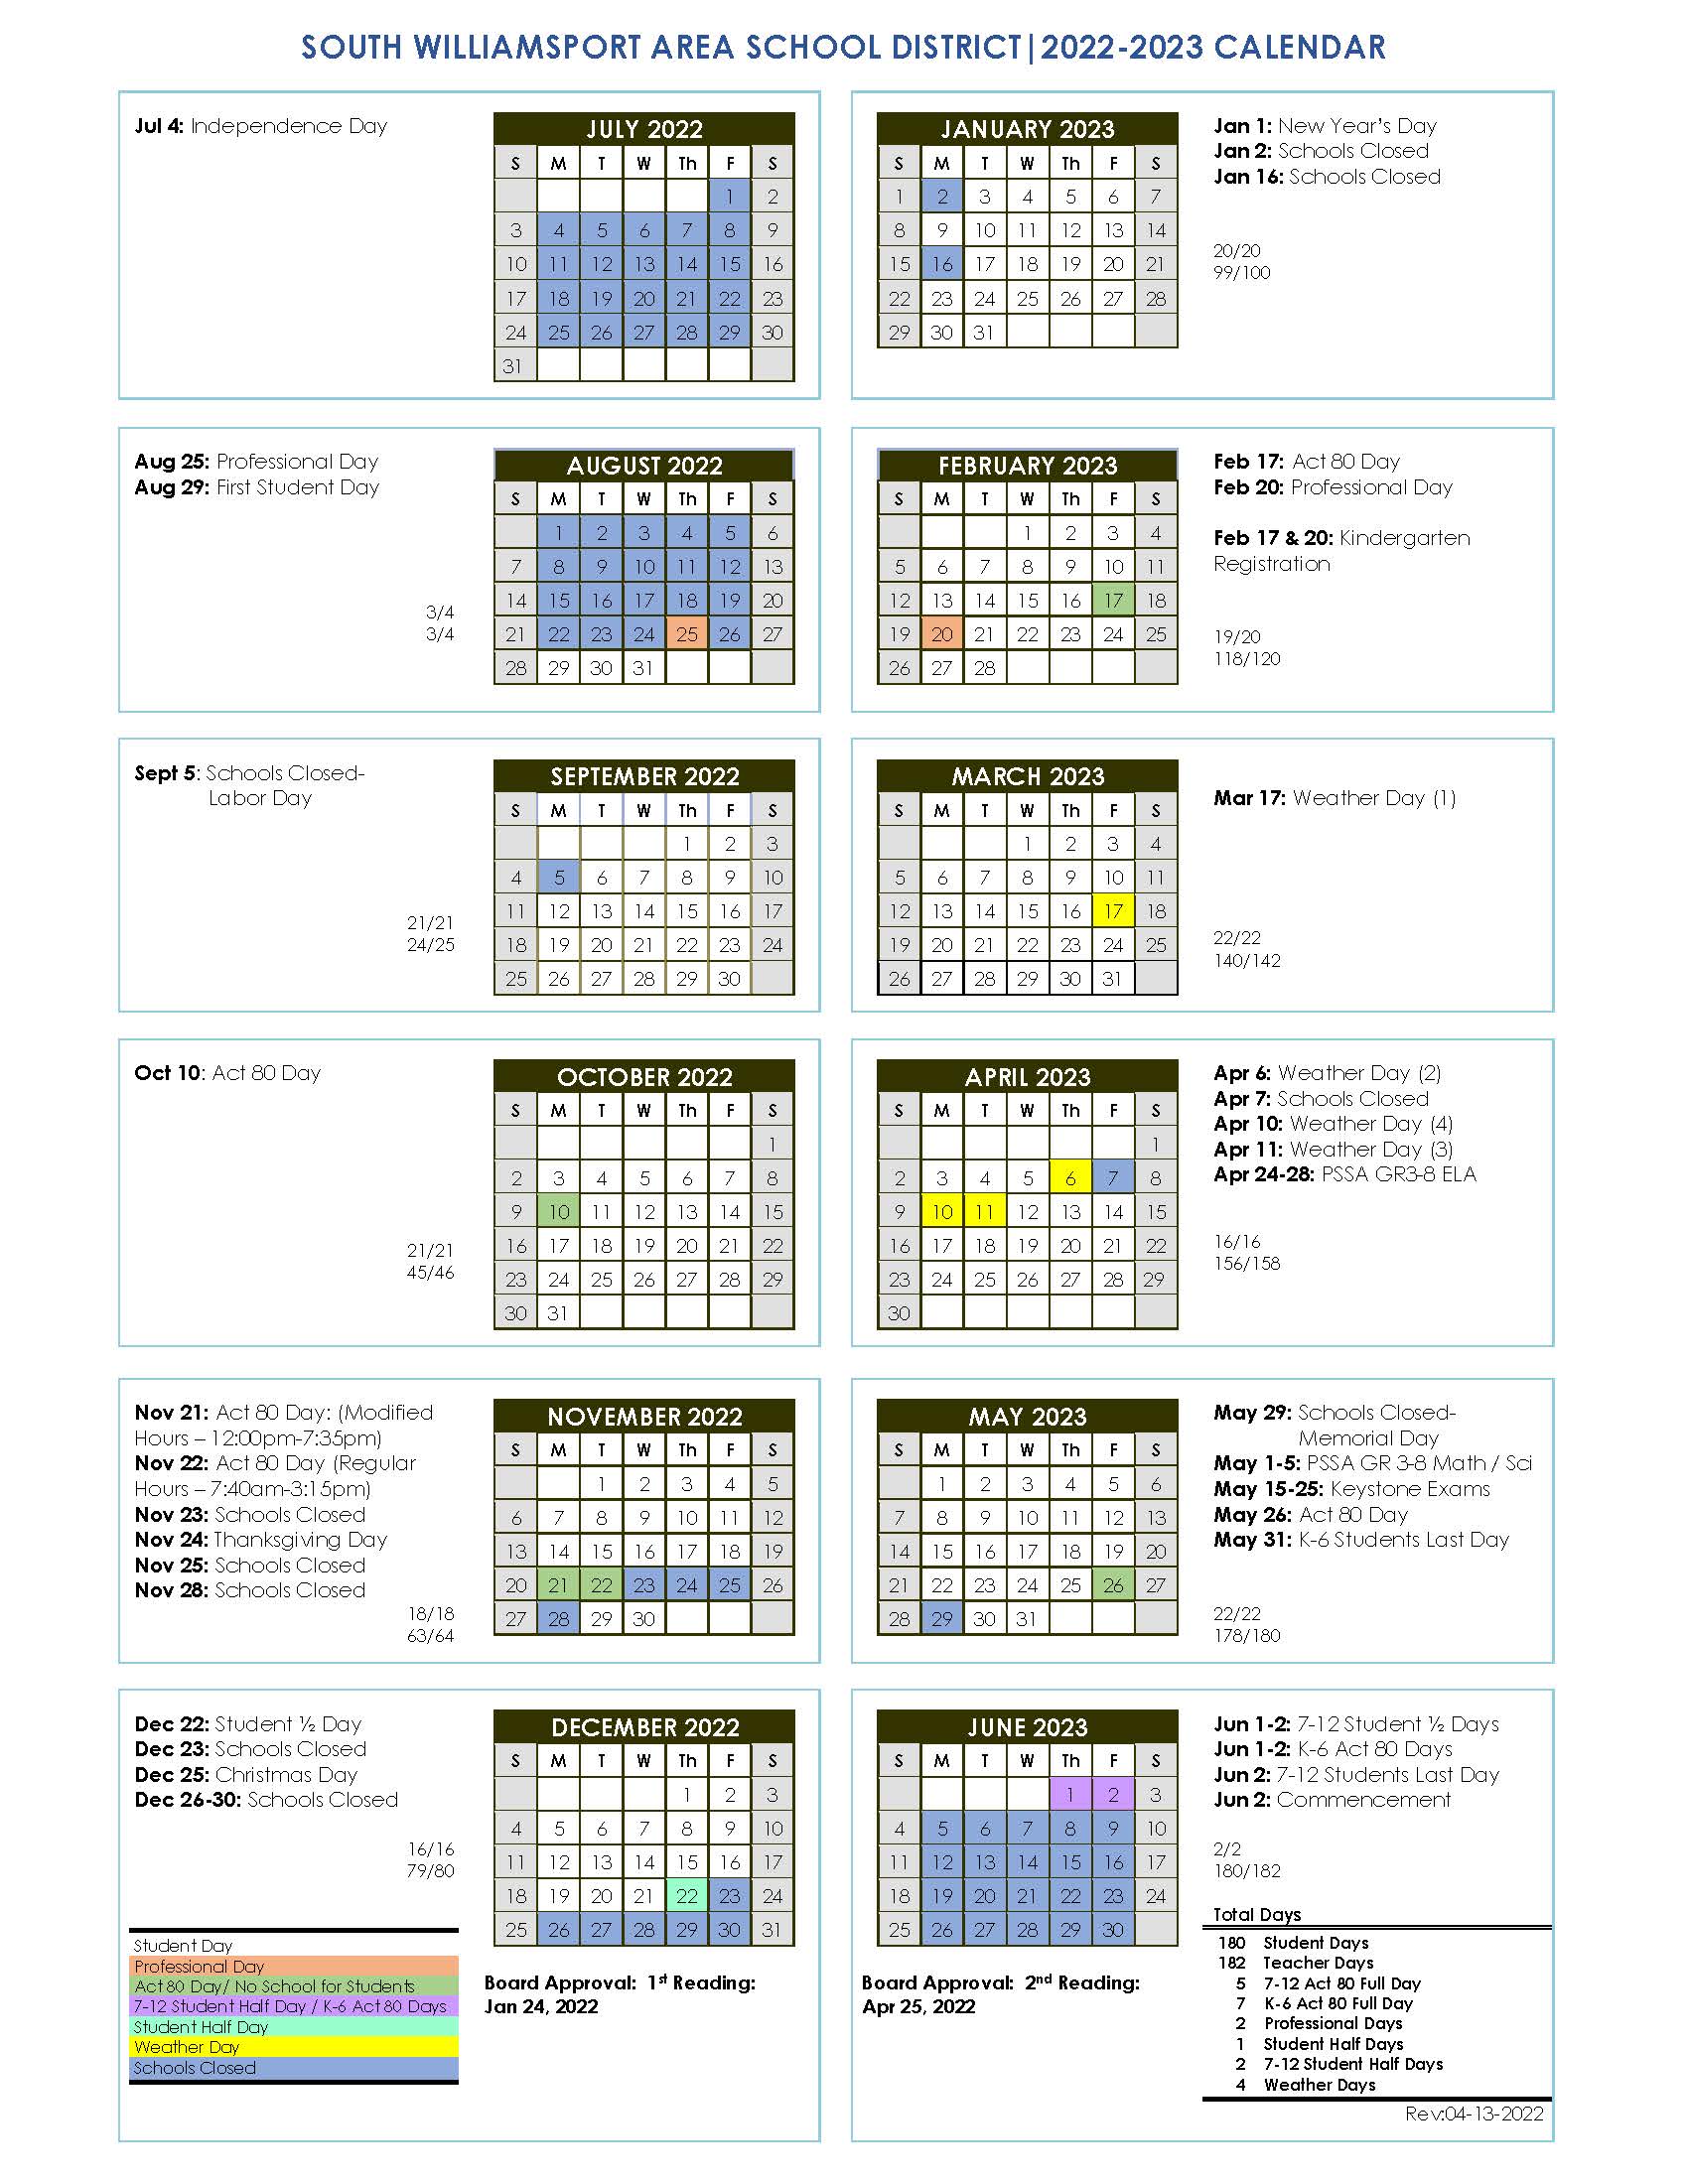 School Calendar – South Williamsport Area School District